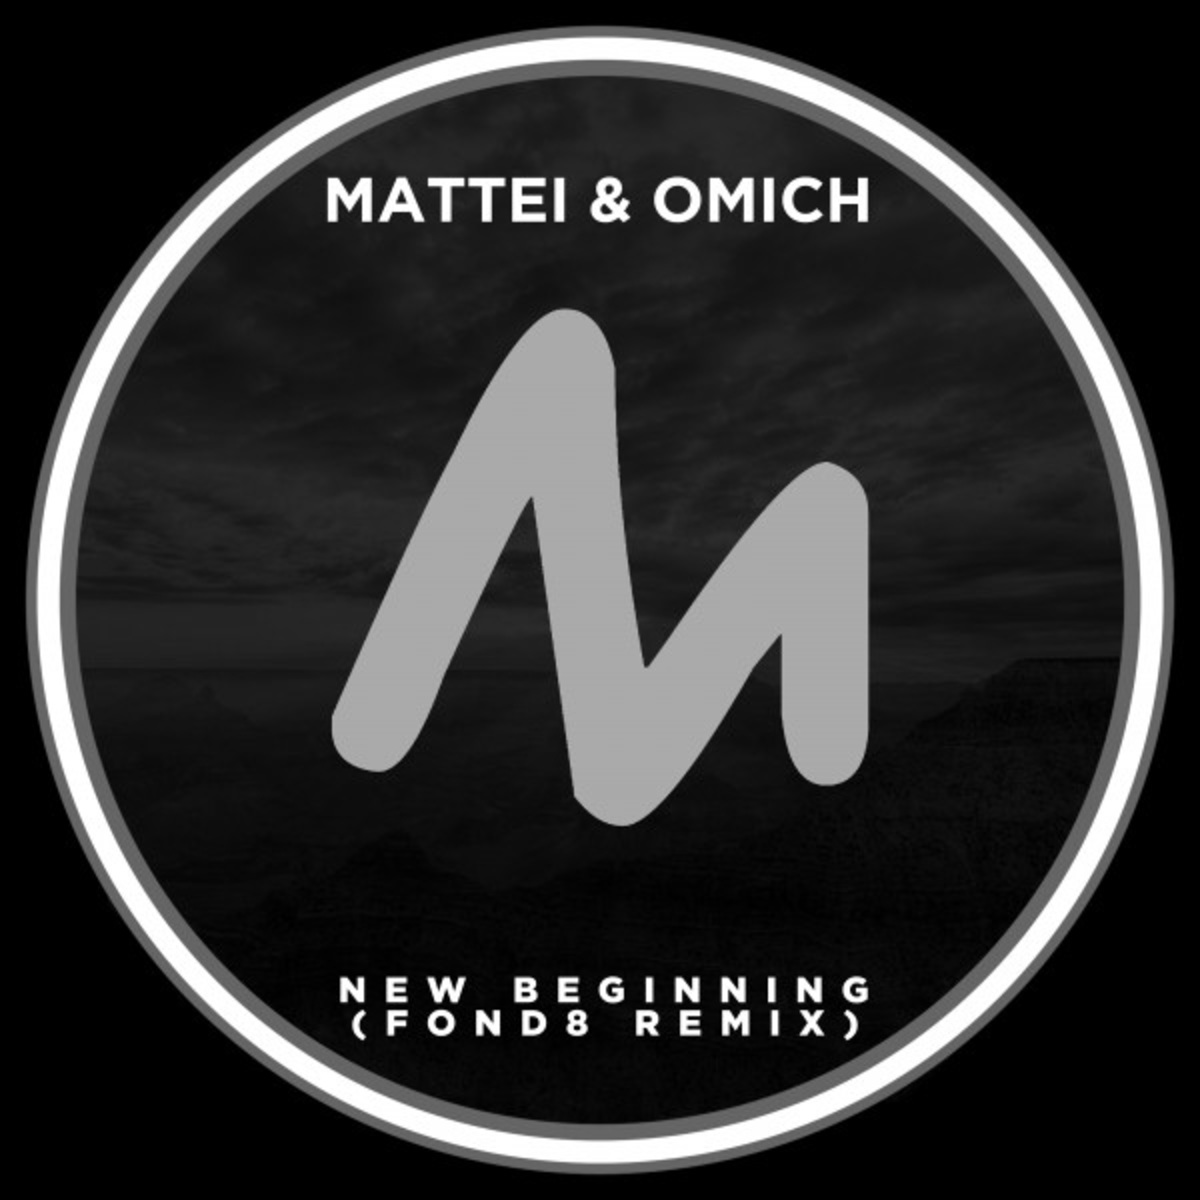 Mattei & Omich - New Beginning (Fond8 Remix) / Metropolitan Recordings